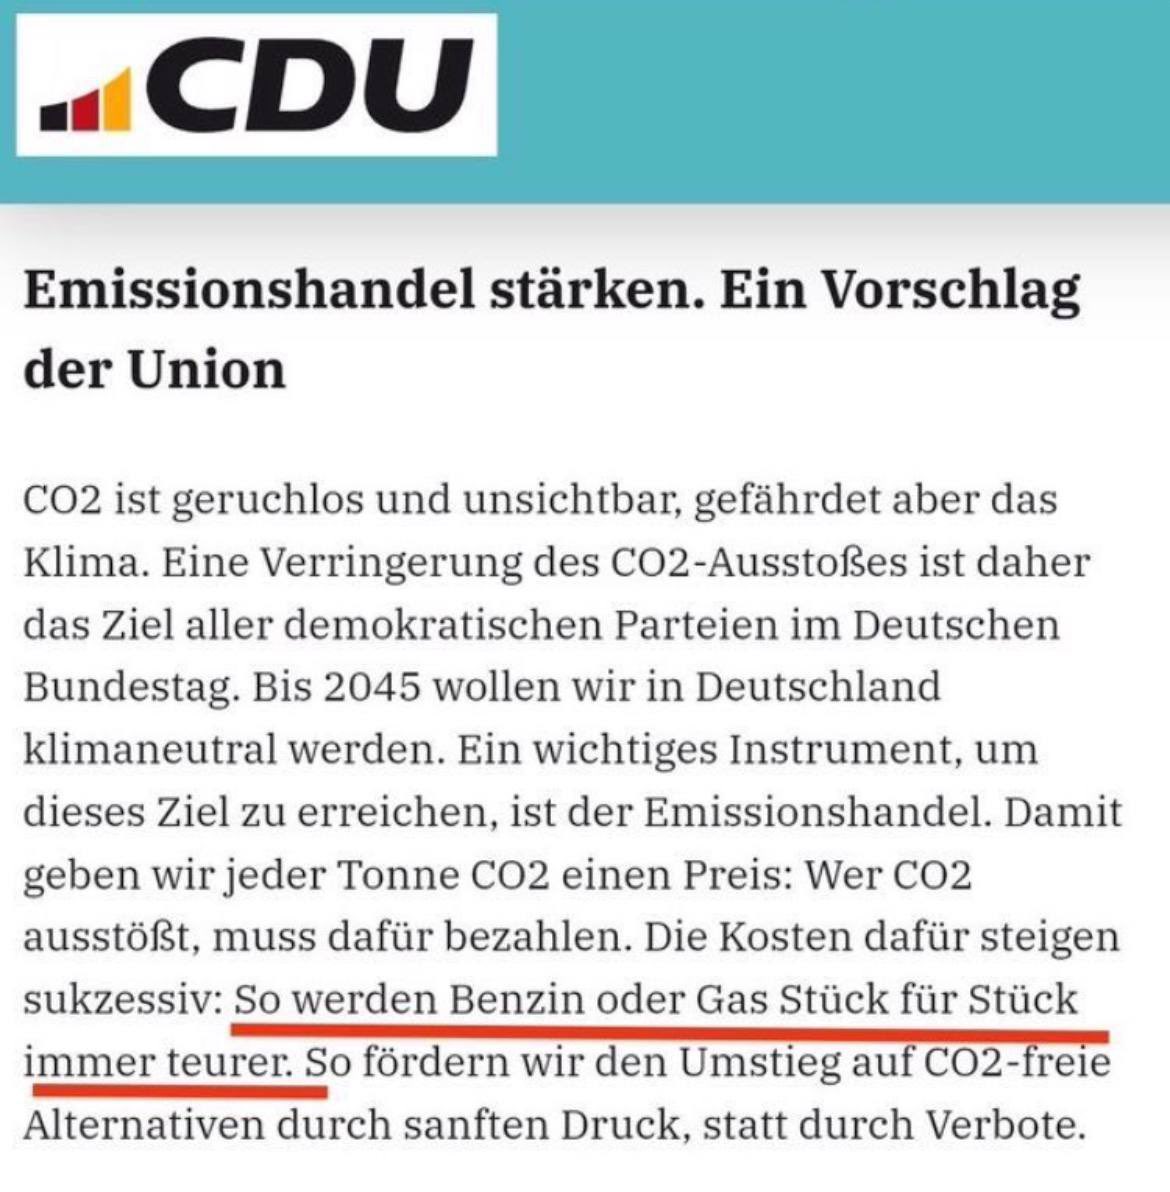 ‼️👉Ein Screenshot von der CDU Homepage, der einen Vorschlag aus dem August 2023 für das Grundsatzprogramm zeigt, das gestern verabschiedet wurde.

Im finalen Programm ist der Emissionshandel weiter enthalten, die Folgen sind klar, aber den markierten Satz haben sie gestrichen.